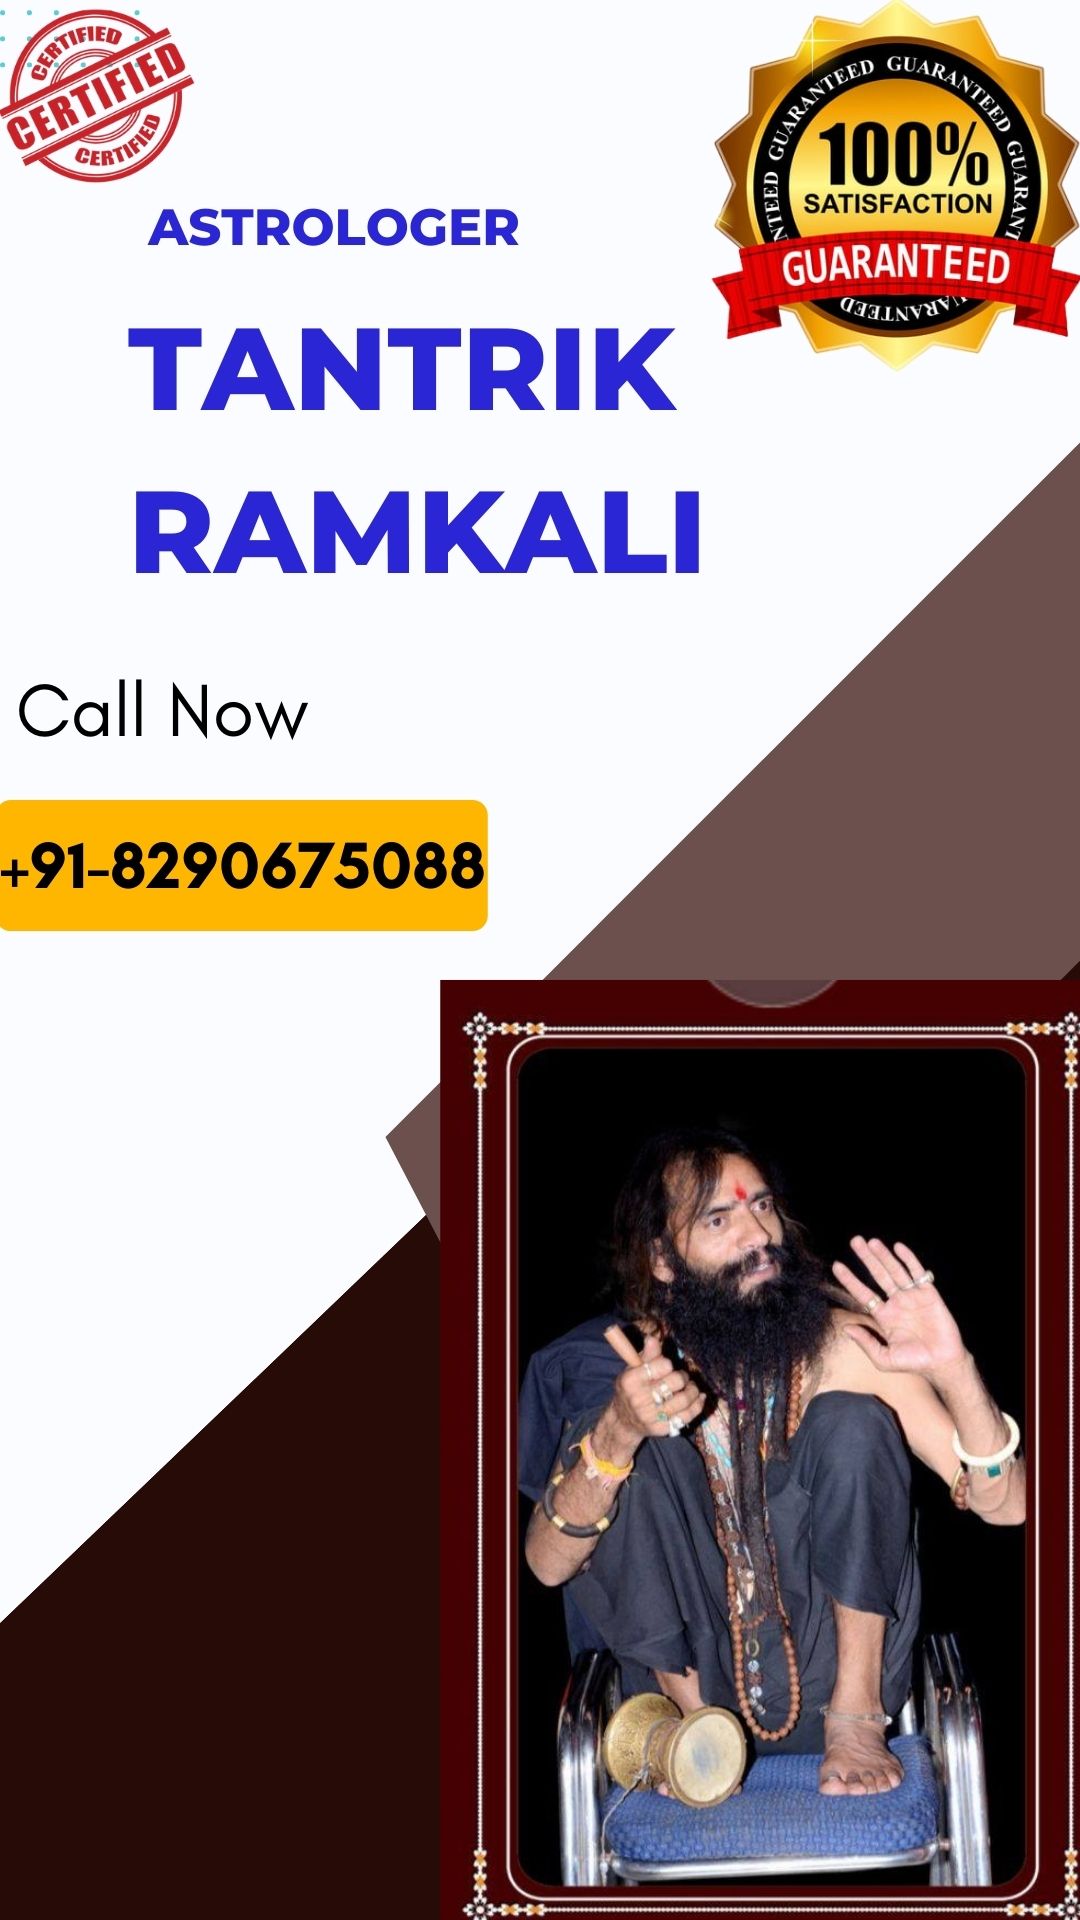 Astrologer Tantrik Ramkali 